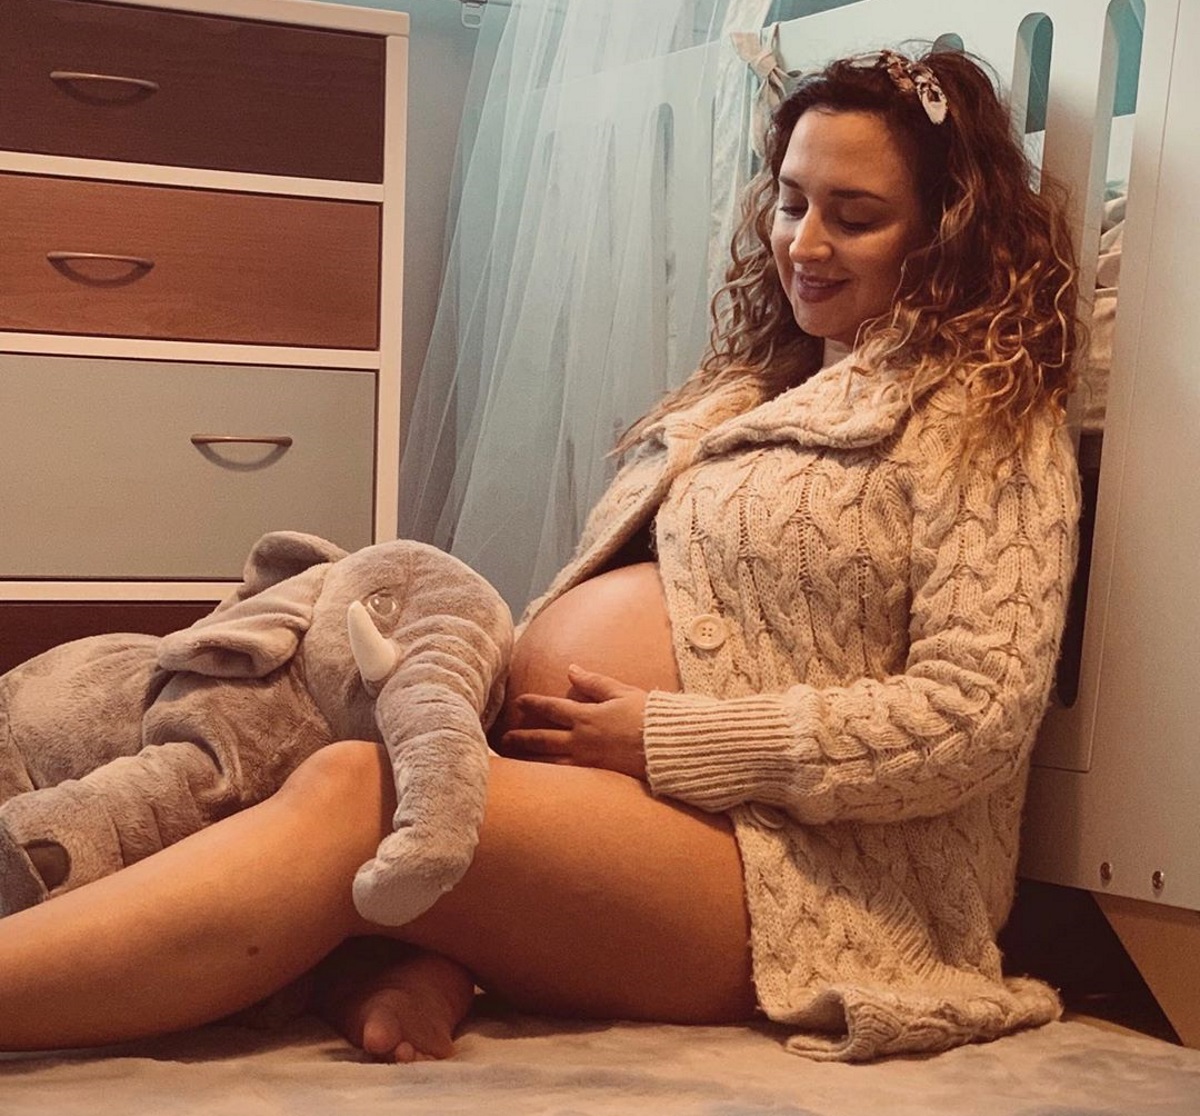 Κλέλια Πανταζή: Οι πρώτες φωτογραφίες του νεογέννητου γιου της!